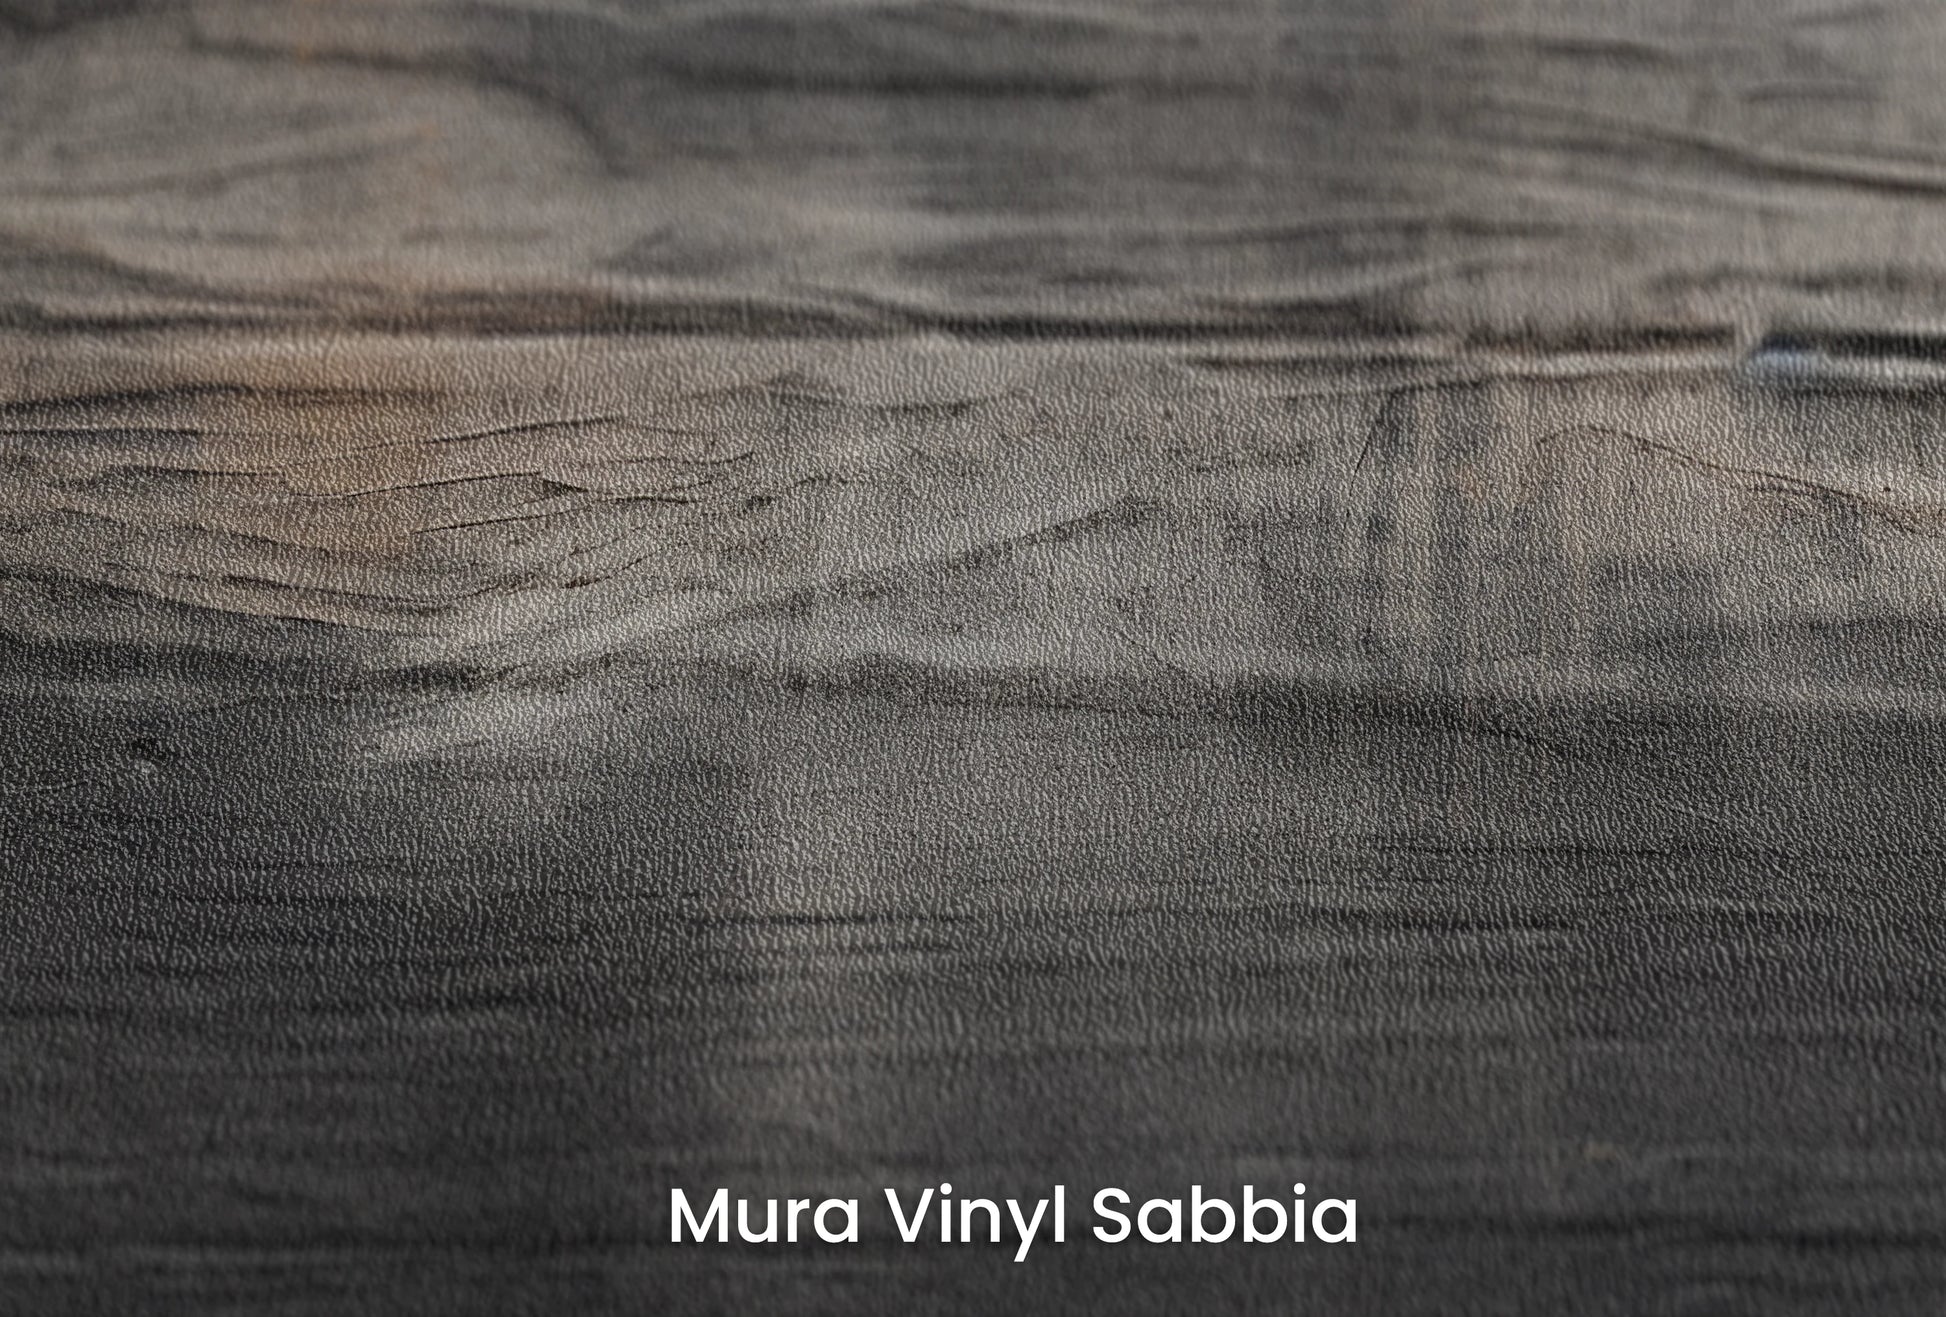 Zbliżenie na artystyczną fototapetę o nazwie Burnt Umber Wave na podłożu Mura Vinyl Sabbia struktura grubego ziarna piasku.